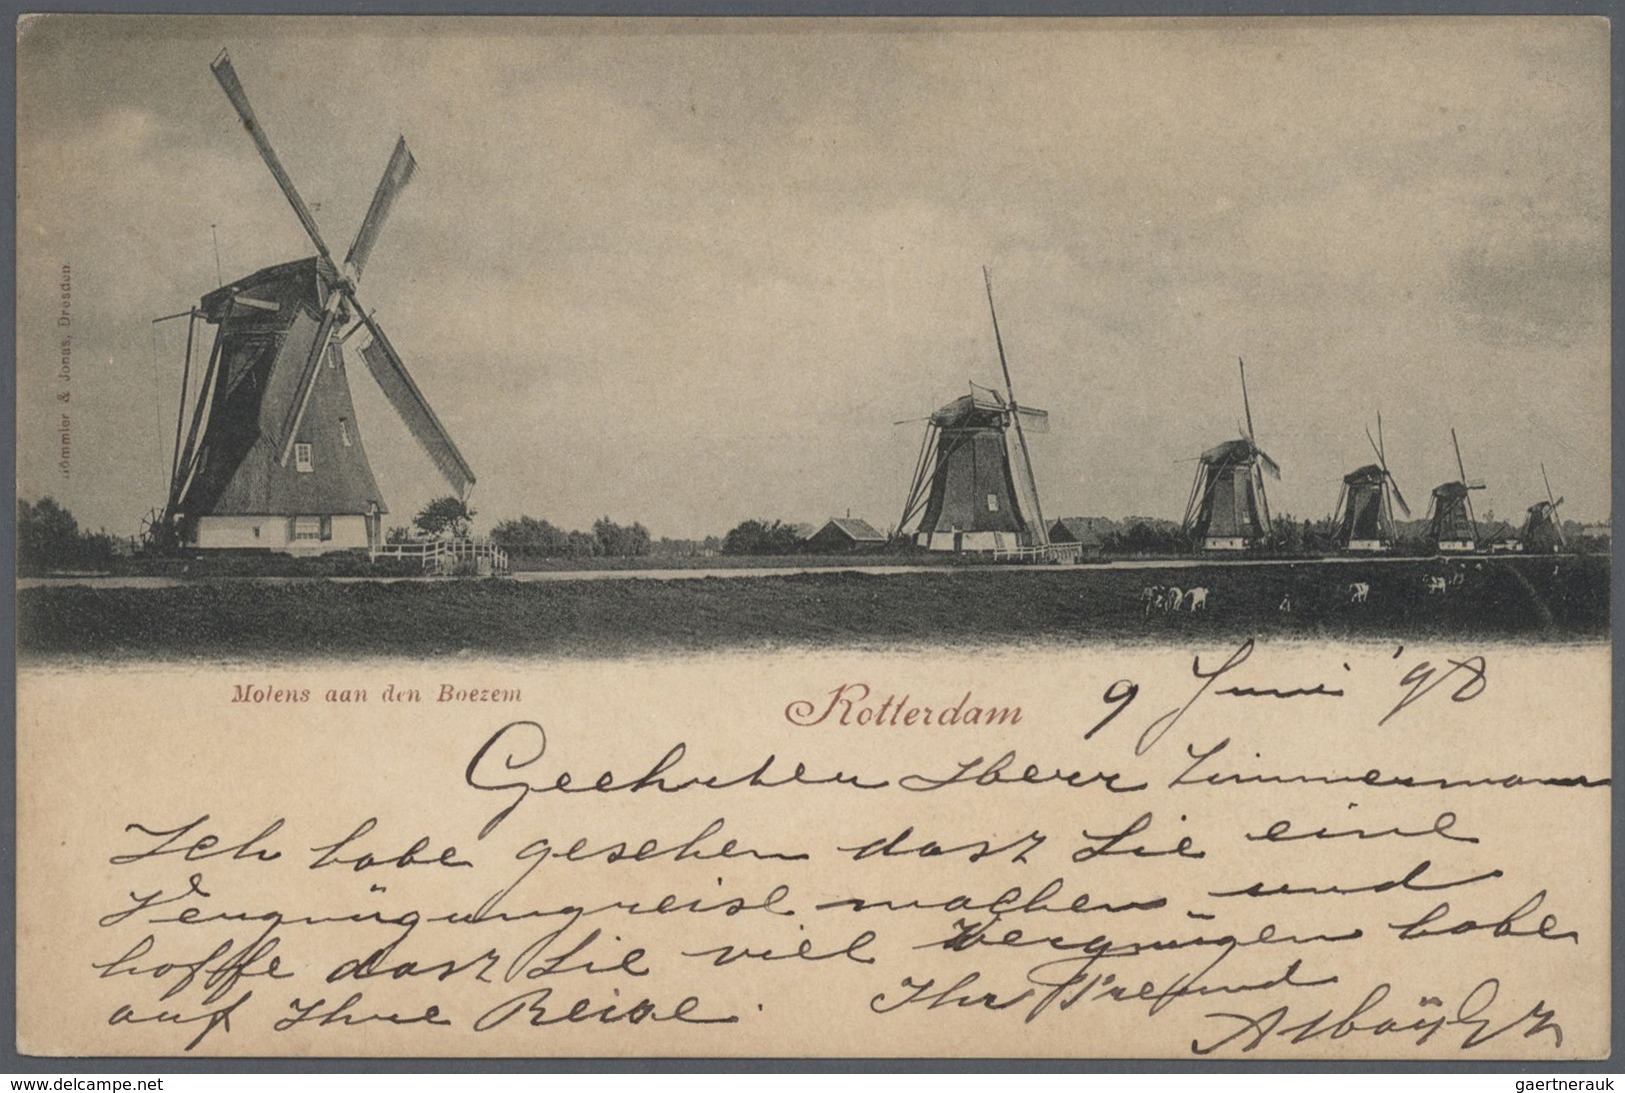 Niederlande: 1892 - 1947, Sammlung von über 100 Ansichtskarten, bis auf wenige Ausnahmen bedarfsgere